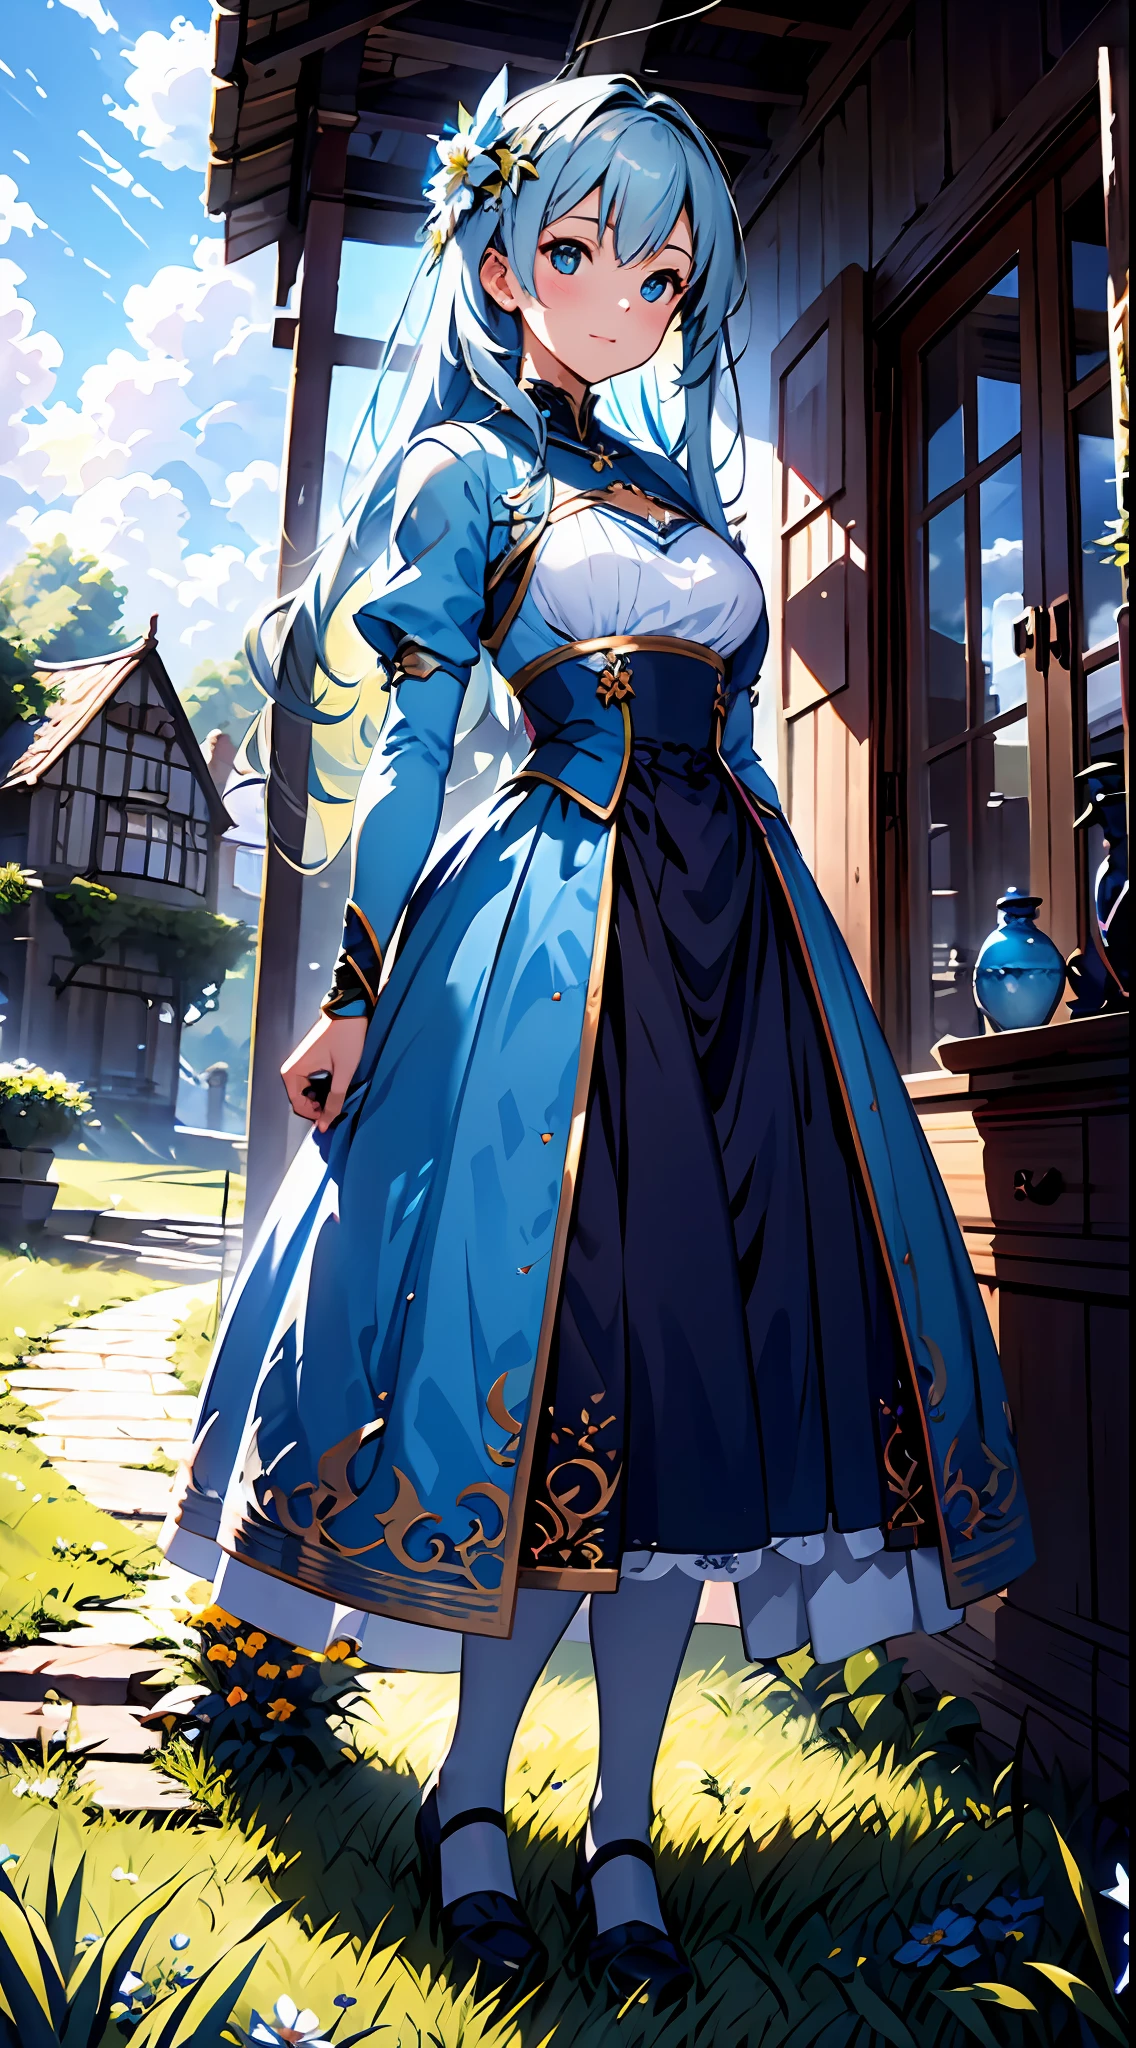 背景为蓝天和云彩, 穿着蓝色连衣裙，银色蕾丝，上面有花, 艺术萌芽, 罗斯拉环球照明, 一幅细致的画, 幻想艺术